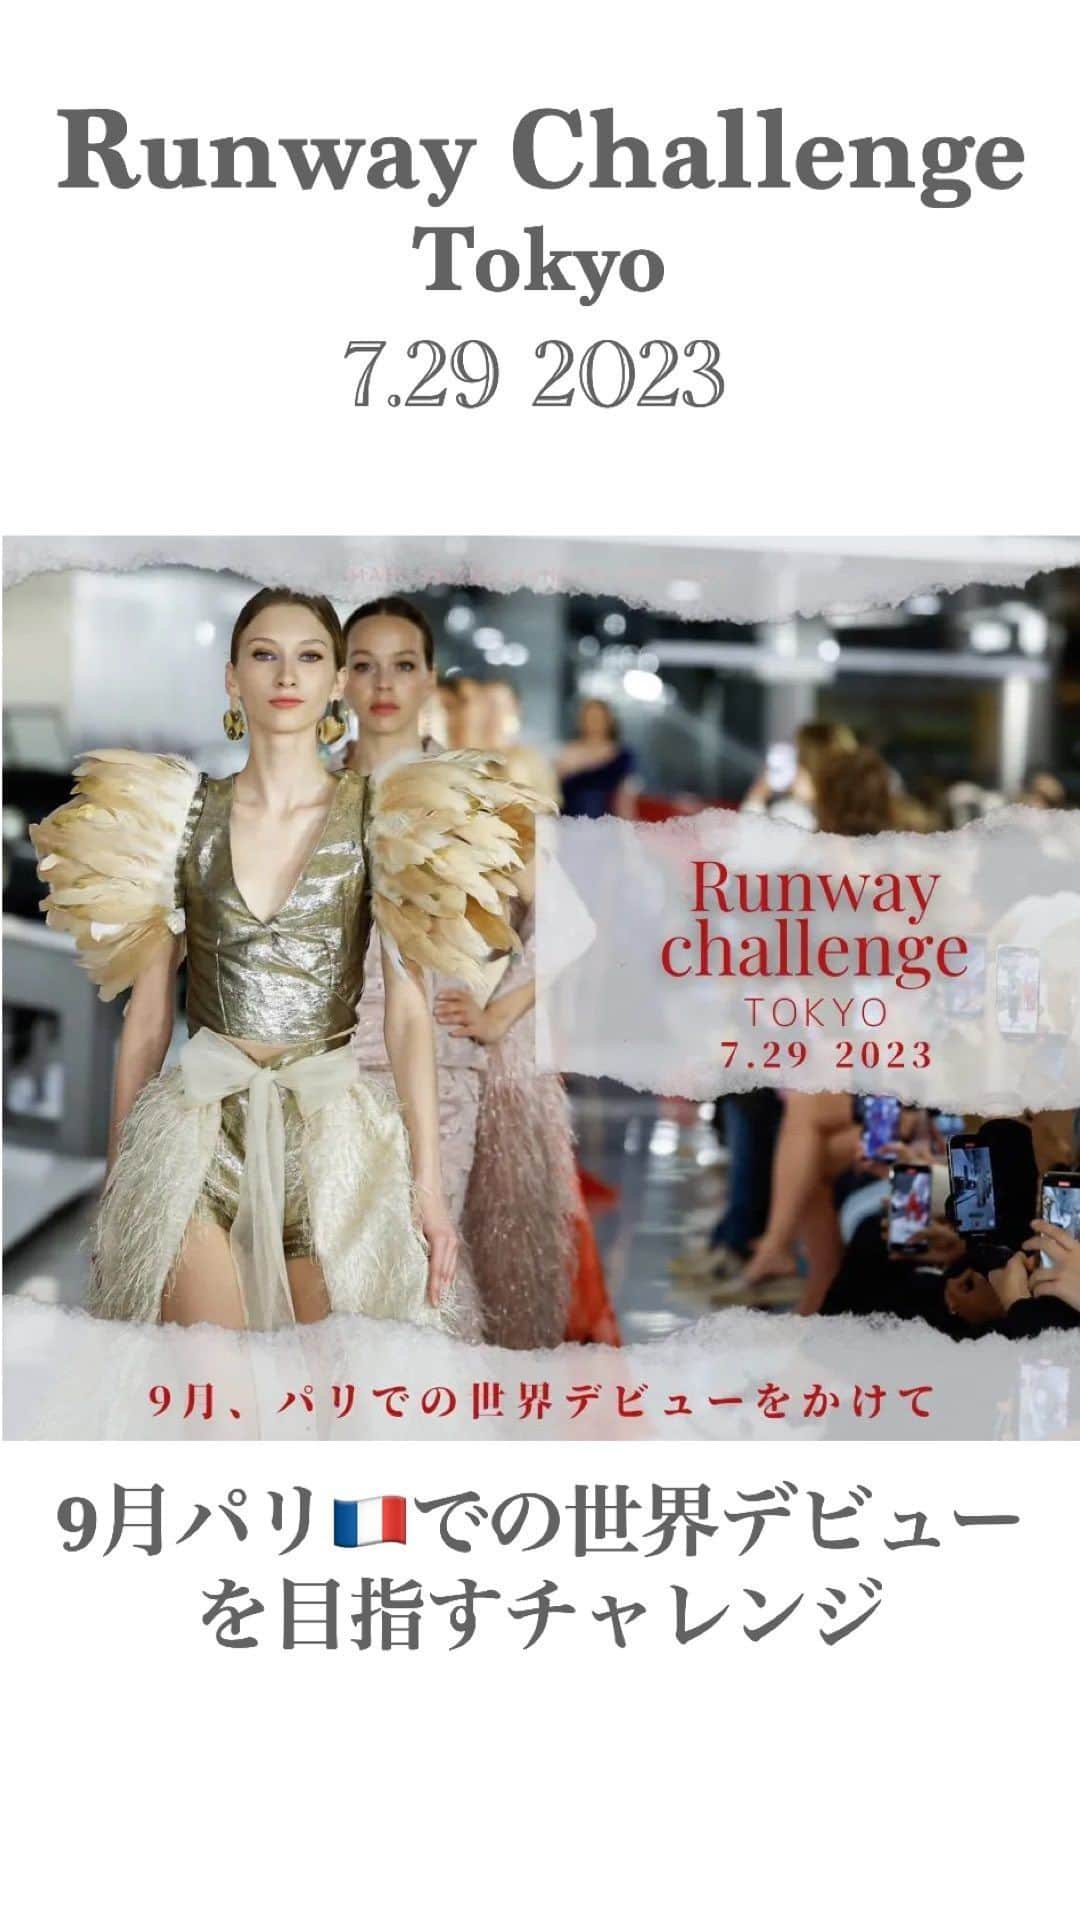 浅井香葉子のインスタグラム：「2023.7.29 開催❣️ ランウェイチャレンジ in 東京🇯🇵 9月パリ🇫🇷での世界デビューを目指して！  ーーーー  MAMI OKANOランウェイチャレンジは 「もっと美しくなりたい」 「新しい自分になりたい」 と願う女性たちに  ランウェイを歩くという 日常を超えた経験をしていただく プロジェクトです。  ヨーロッパの社交に精通し レッドカーペットで活躍する デザイナーMAMI OKANOと  世界のランウェイを経験してきた モデル/ウォーキングディレクター浅井香葉子による  ドレスカウンセリングやウォーキング指導 マナーレッスンなど 貴重なレッスンを受けていただきます  クライマックスは ヨーロッパの社交を再現する 富裕層の集まるパーティで ランウェイを歩いていただきます。  優勝者には 9月にパリで行われる ランウェイデビュープロジェクトへの 出場権が与えられます。  Red carpet dress “MAMI OKANO”が主催する「ランウェイデビュープロジェクト」は、デザイナーMAMI OKANOの手による、一人一人の人生を輝かせ引き上げるドレスを身に纏い、世界のランウェイにデビューするプロジェクトです。  美しさを世界レベルに 引き上げるランウェイプロジェクト パリデビューのチャンスです。  皆様のチャレンジをお待ちしています。  エントリーは @asaikayoko ハイライト「受付中」よりリンク飛べます  @mamidress2022  @mami.beautylife.monaco   #ランウェイモデル募集 #ランウェイモデル #パリコレ #モデルウォーキング #コンテストウォーキング #ウォーキング講師」